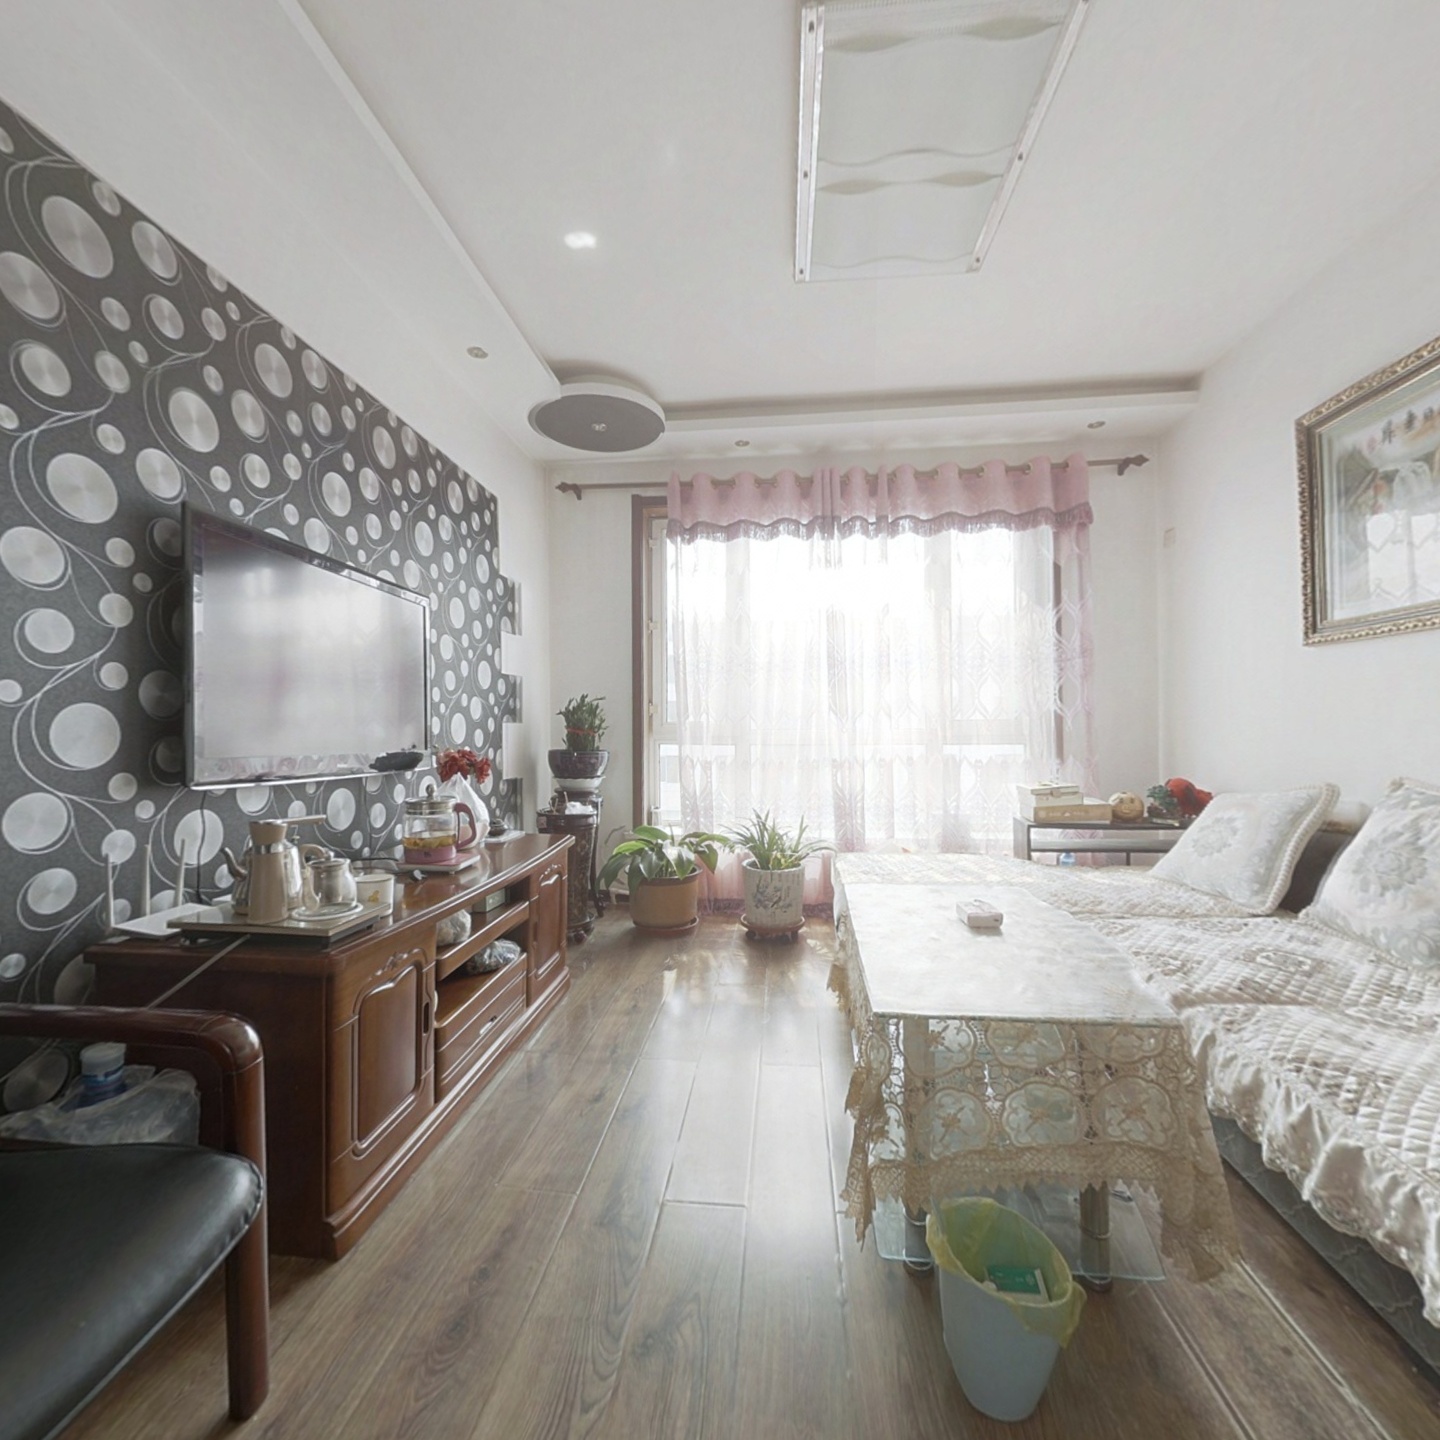 哈尔滨新区正常家装4室2厅2卫提前预约随时看房